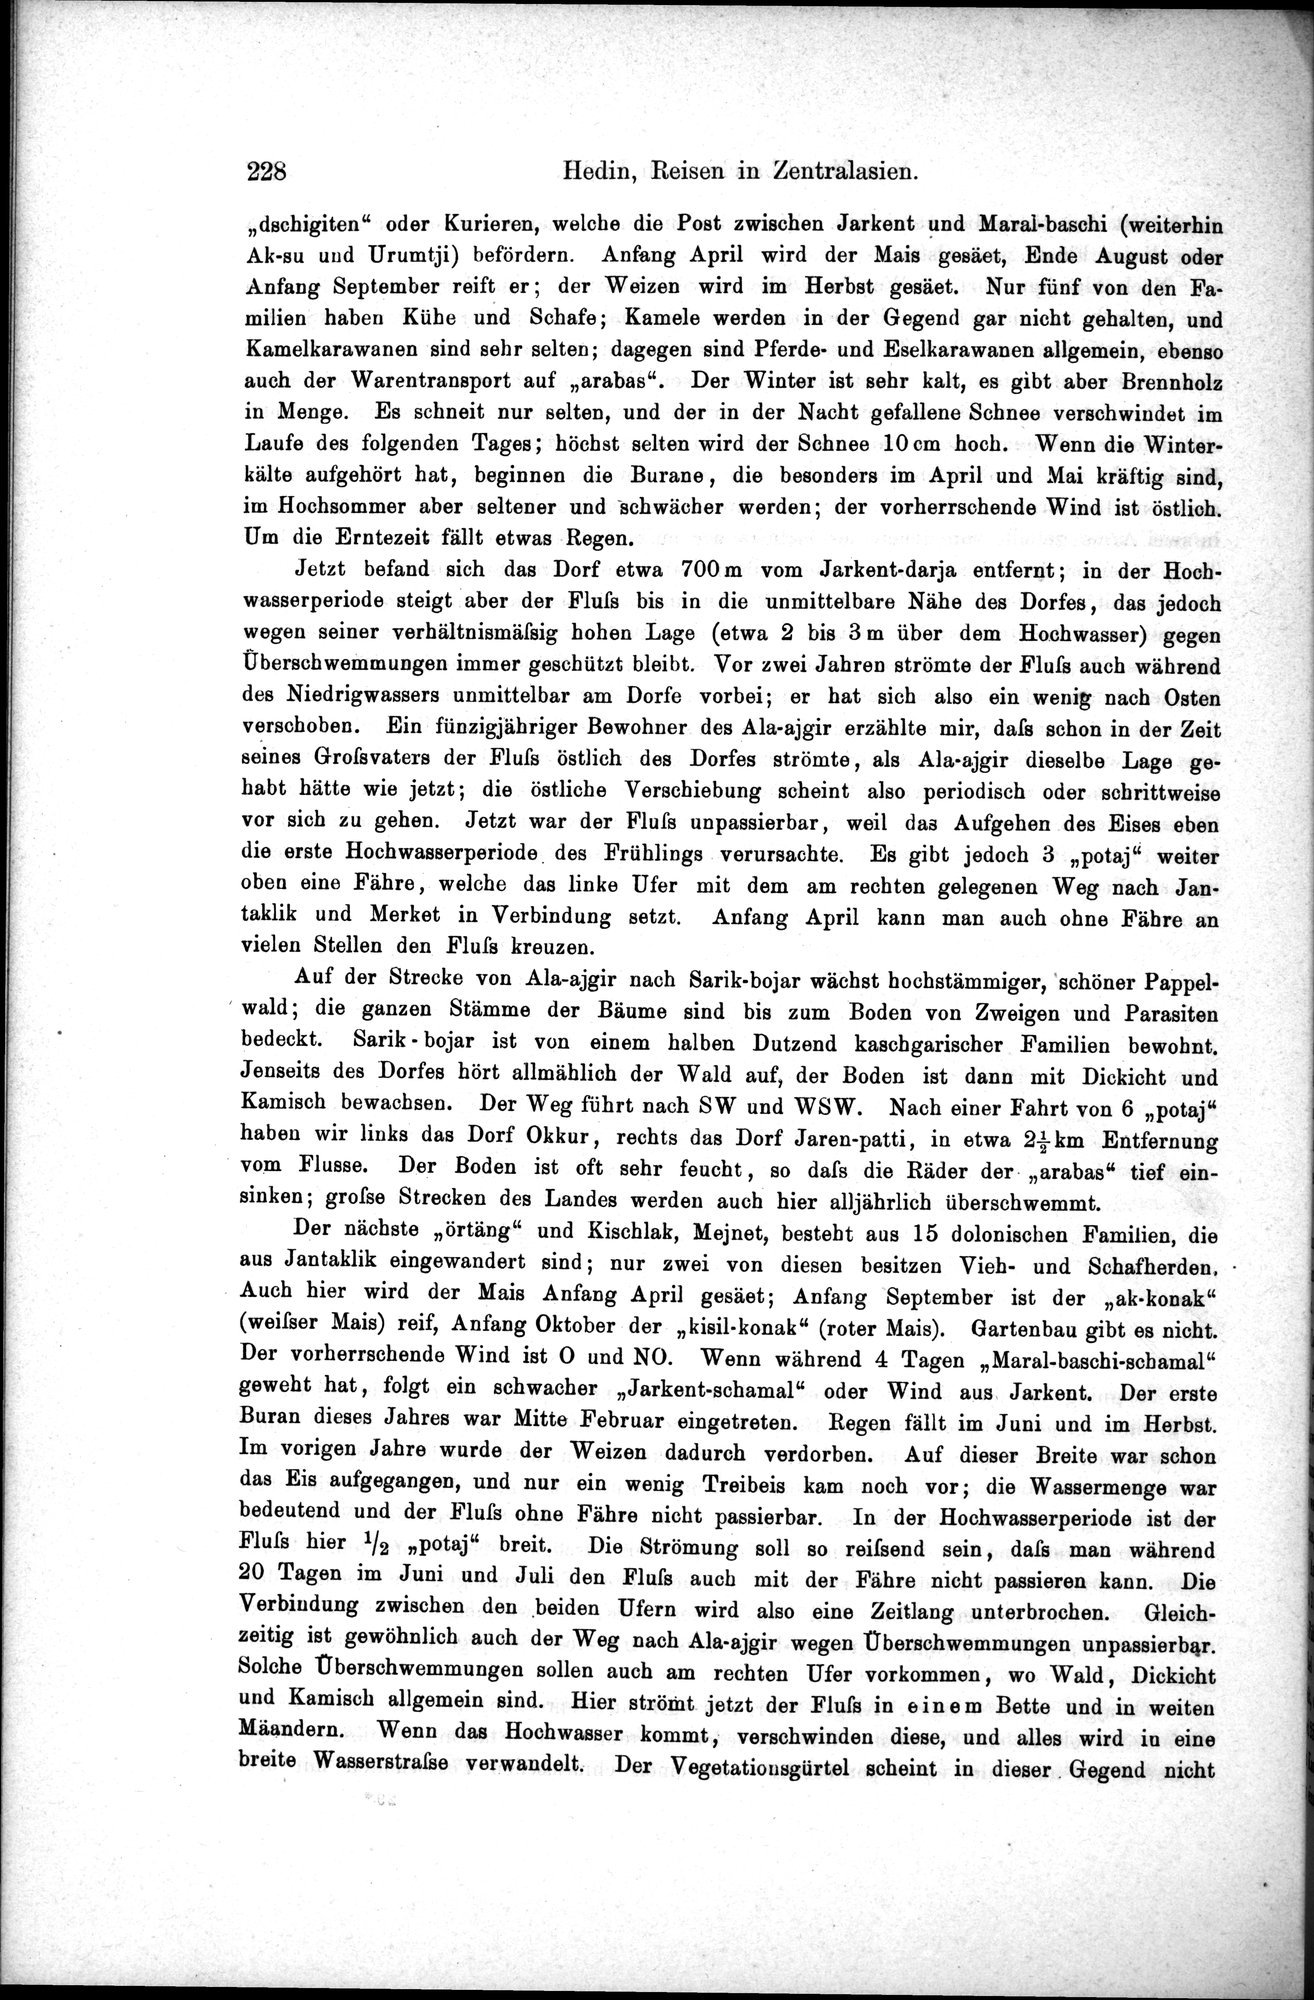 Die Geographische-Wissenschaftlichen Ergebnisse meiner Reisen in Zentralasien, 1894-1897 : vol.1 / Page 240 (Grayscale High Resolution Image)